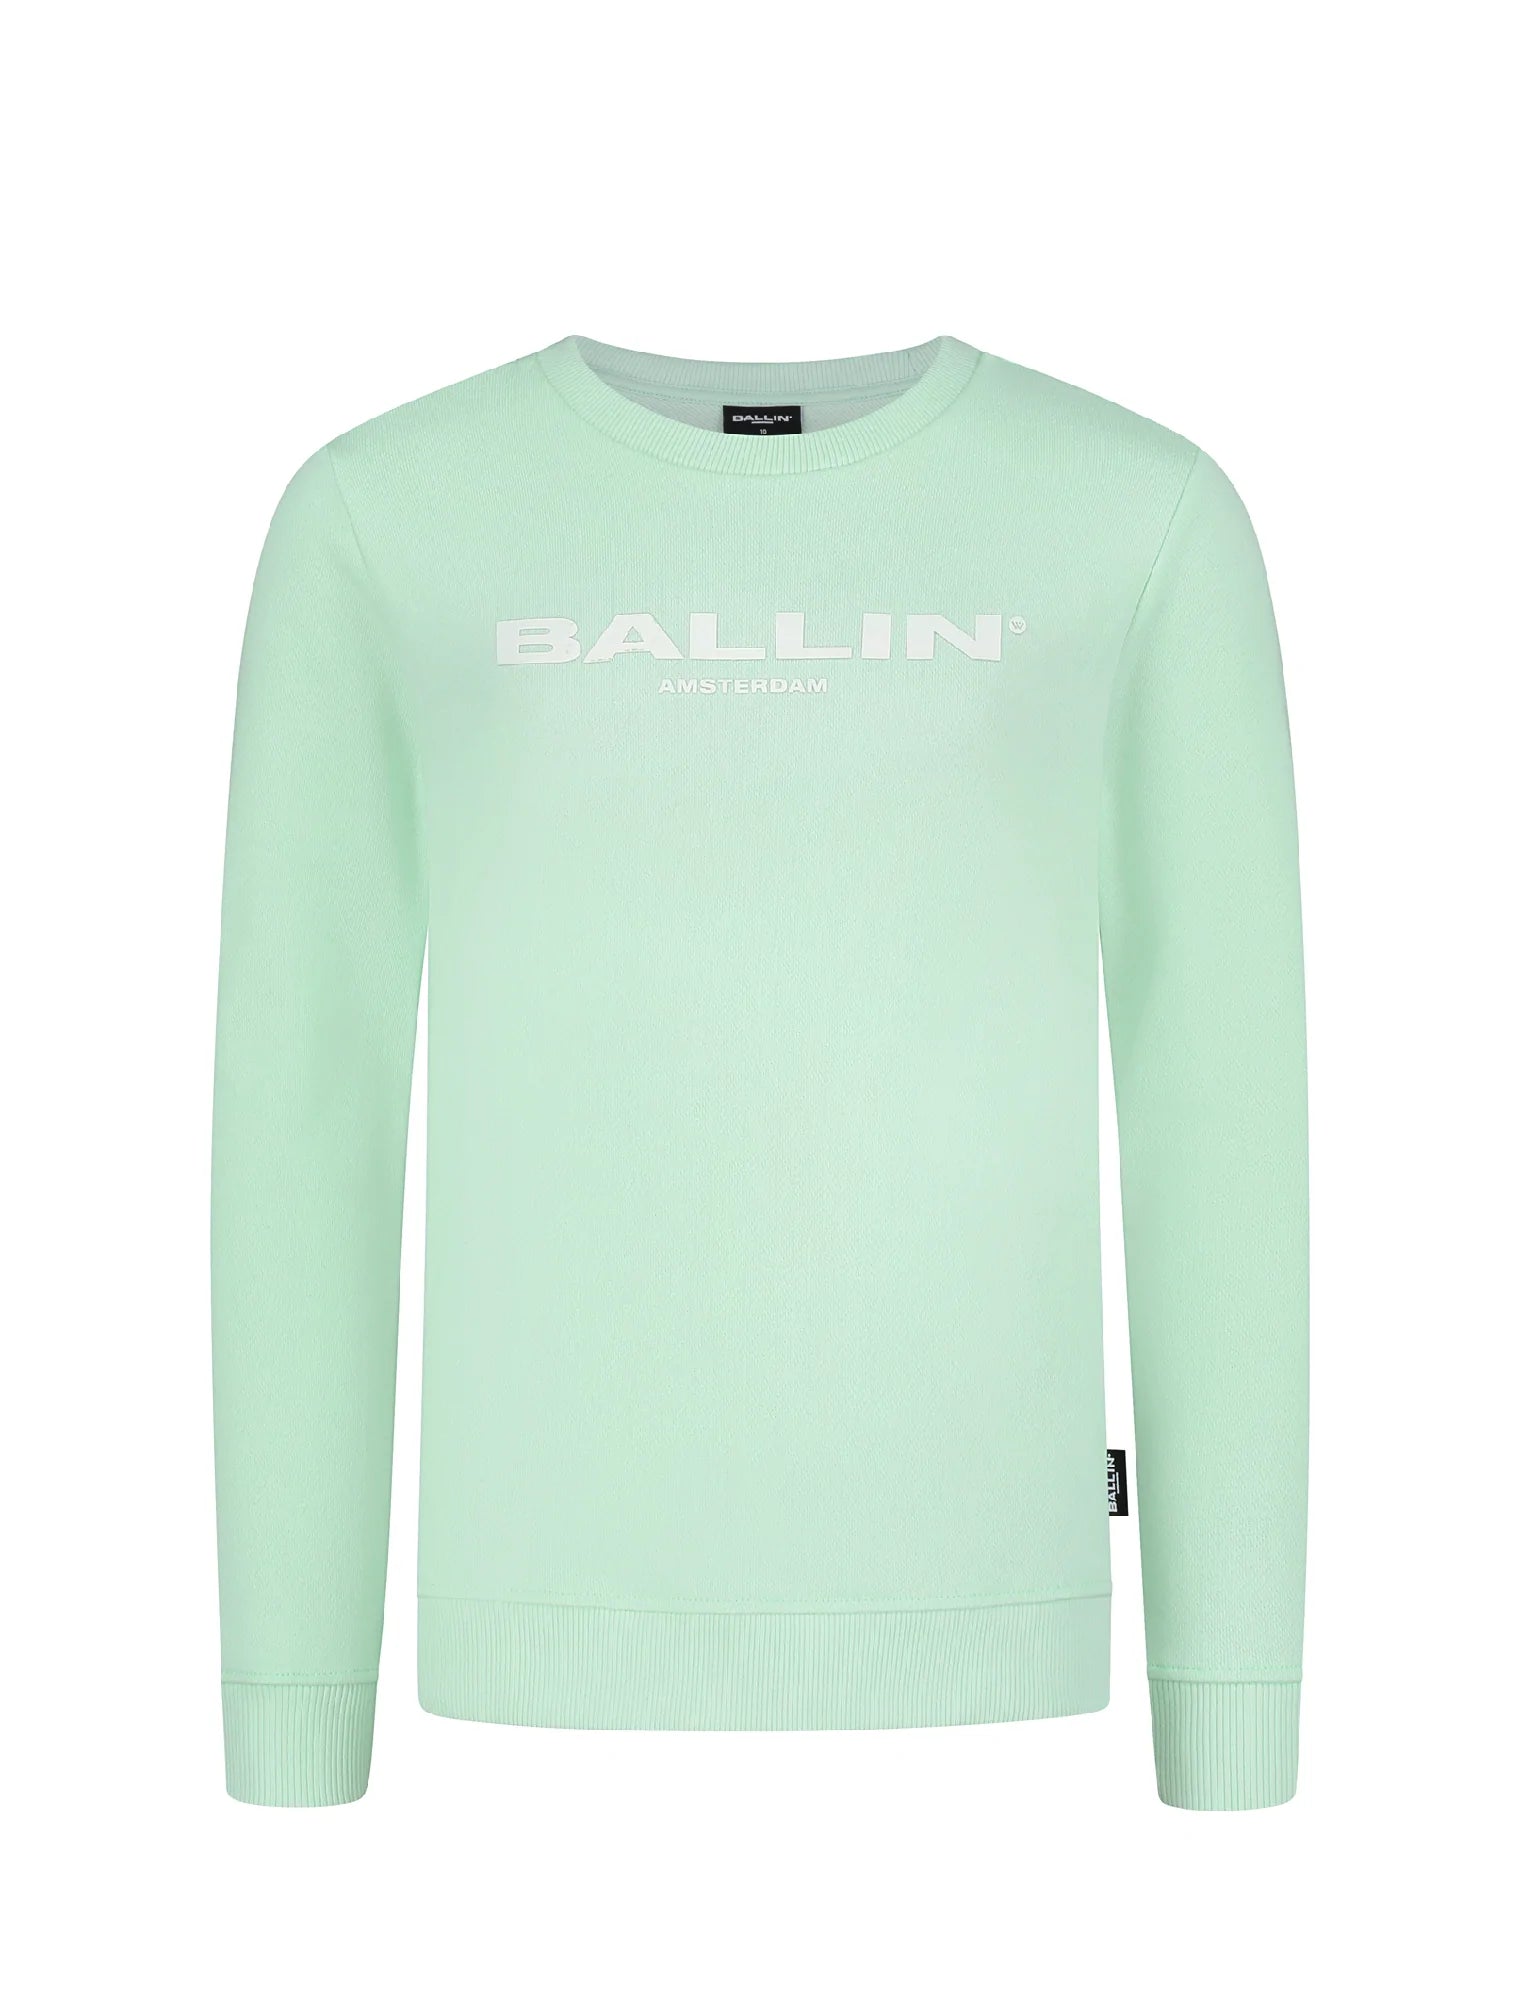 Unisexs Sweater crewneck van Ballin Amsterdam in de kleur Mint in maat 176.